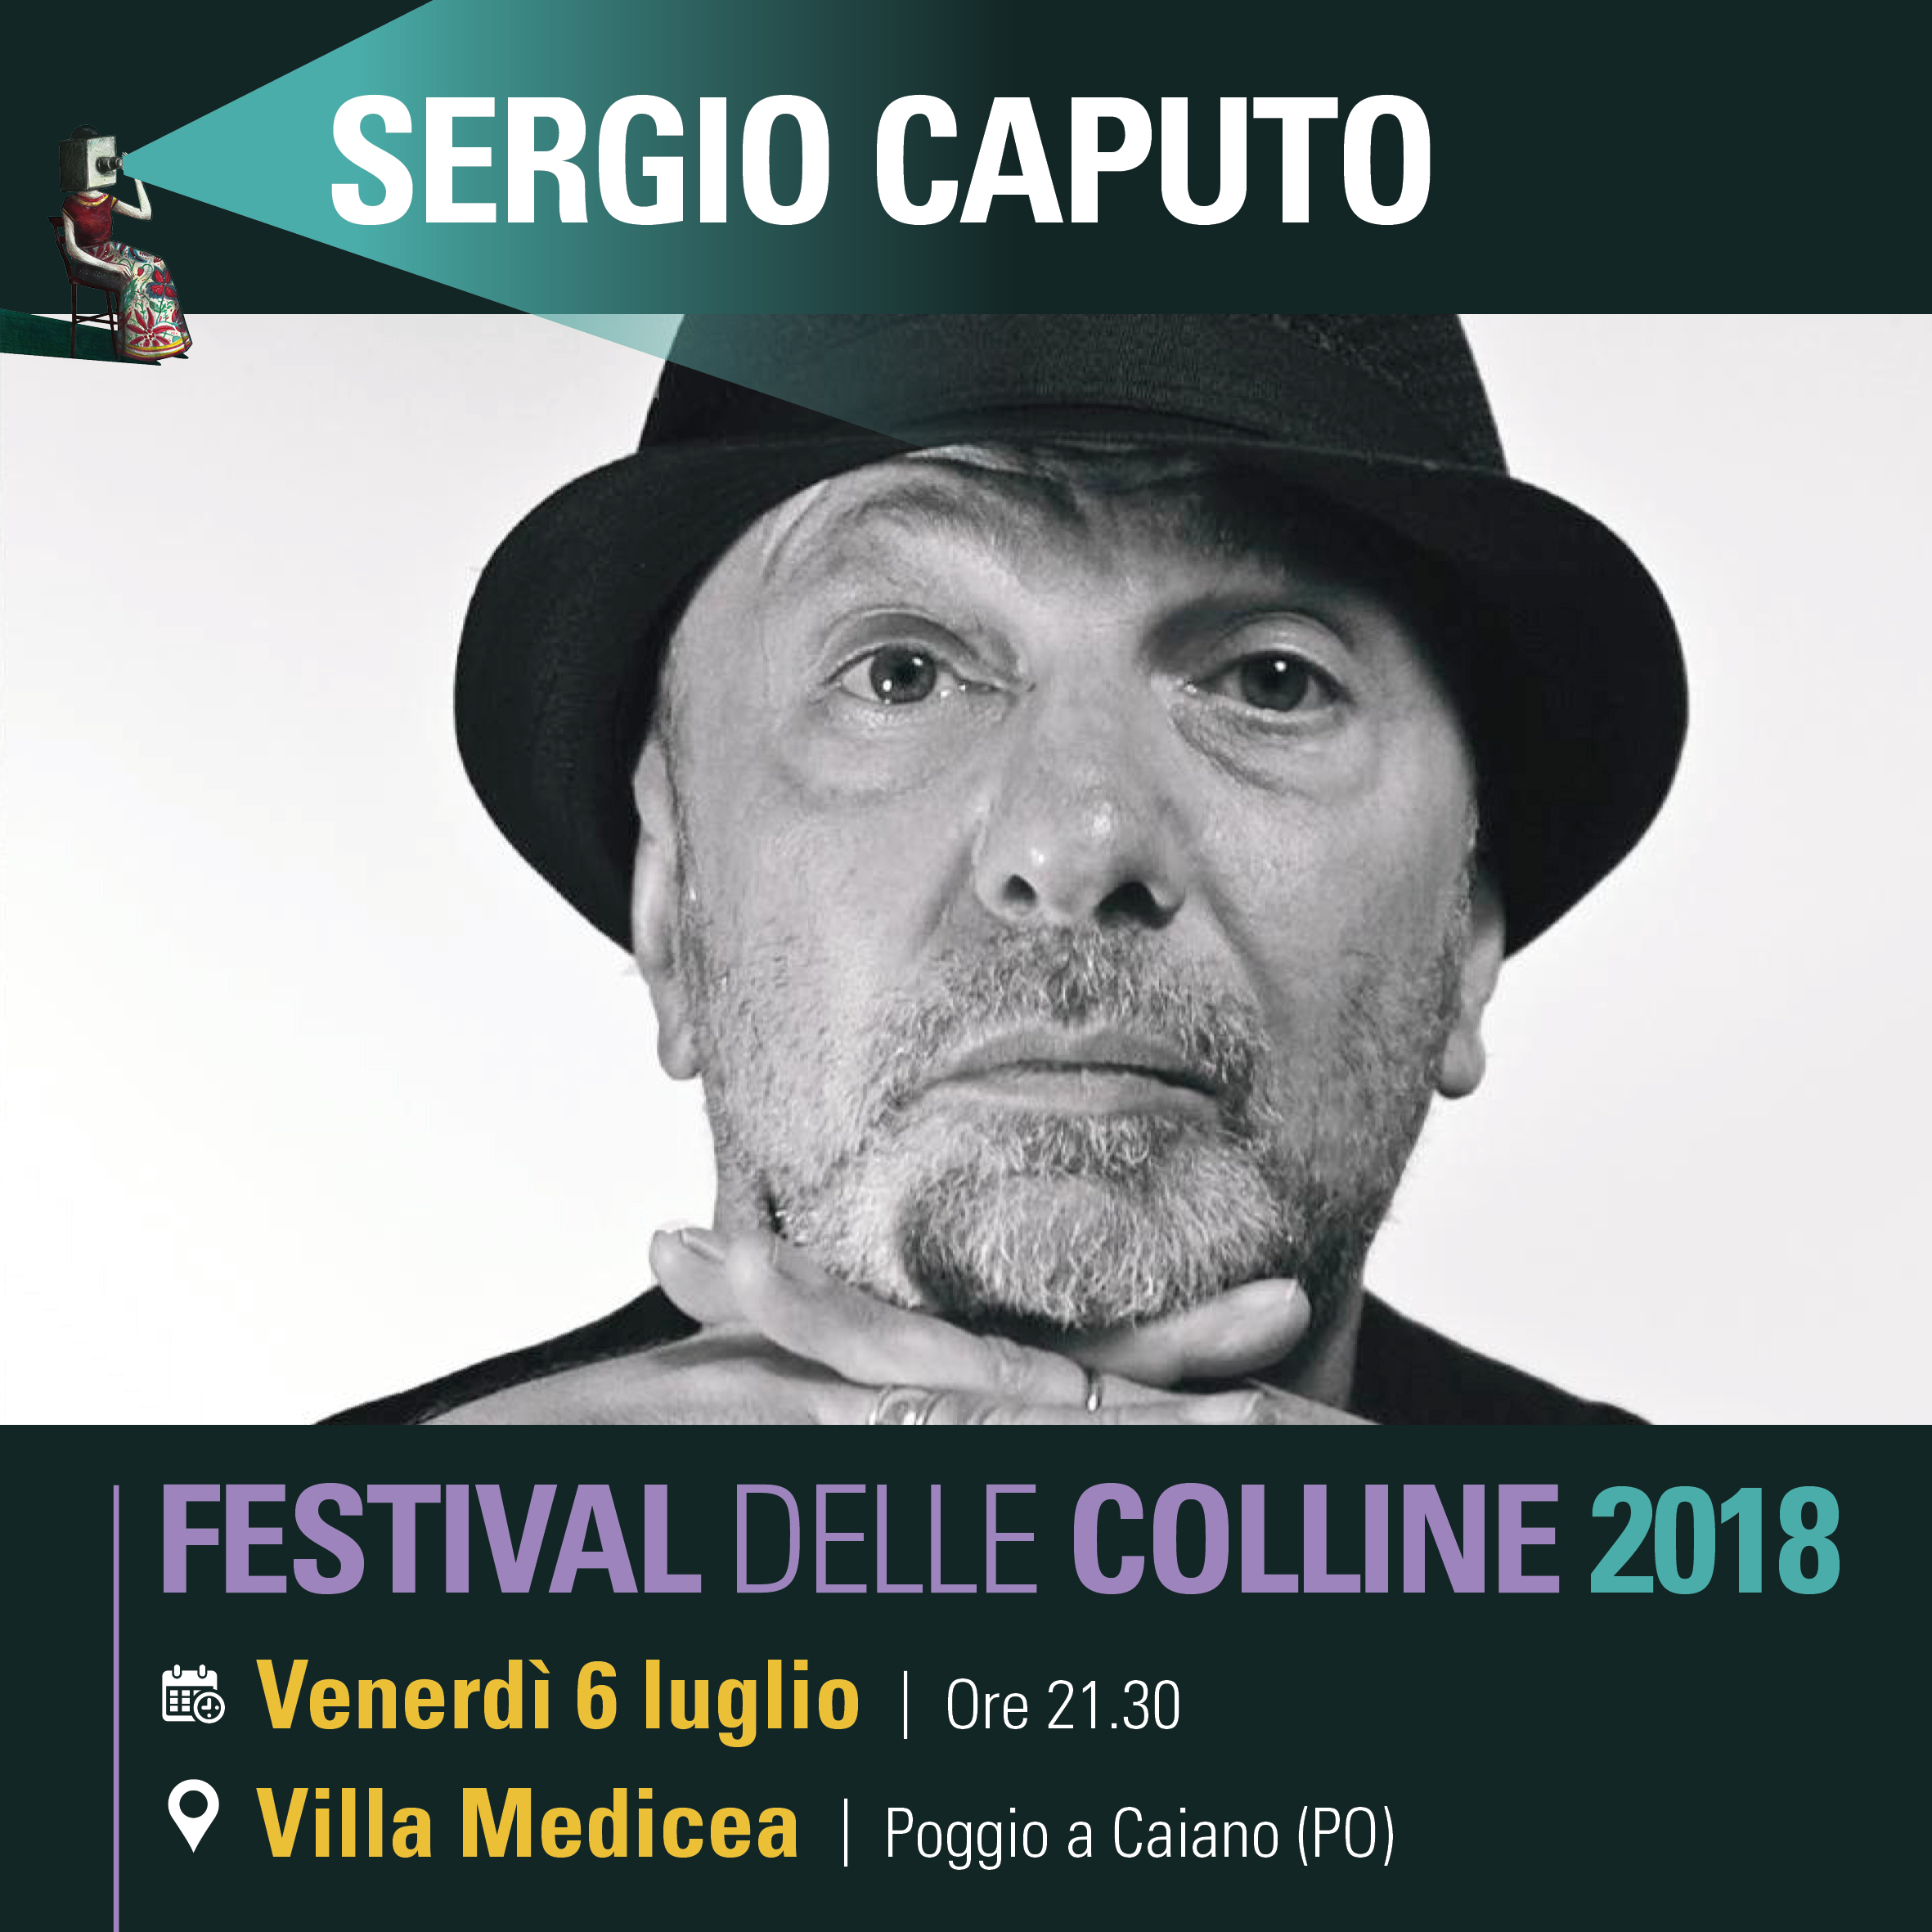 Foto di Sergio Caputo al Festival delle Colline 2018